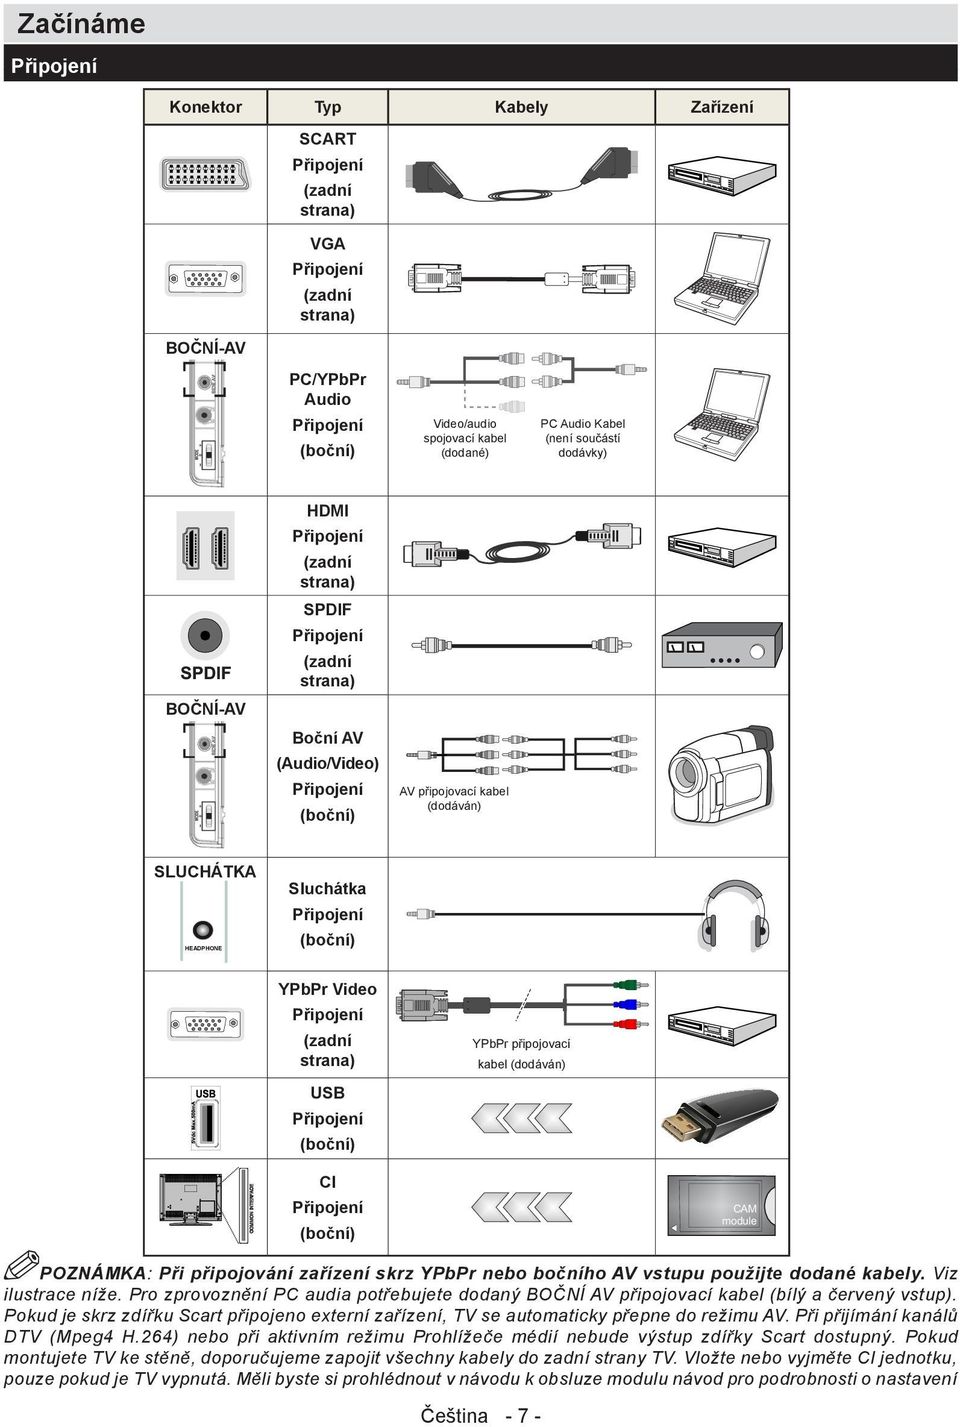 Sluchátka Připojení (boční) YPbPr Video Připojení (zadní strana) USB Připojení (boční) YPbPr připojovací kabel (dodáván) CI Připojení (boční) POZNÁMKA: Při připojování zařízení skrz YPbPr nebo